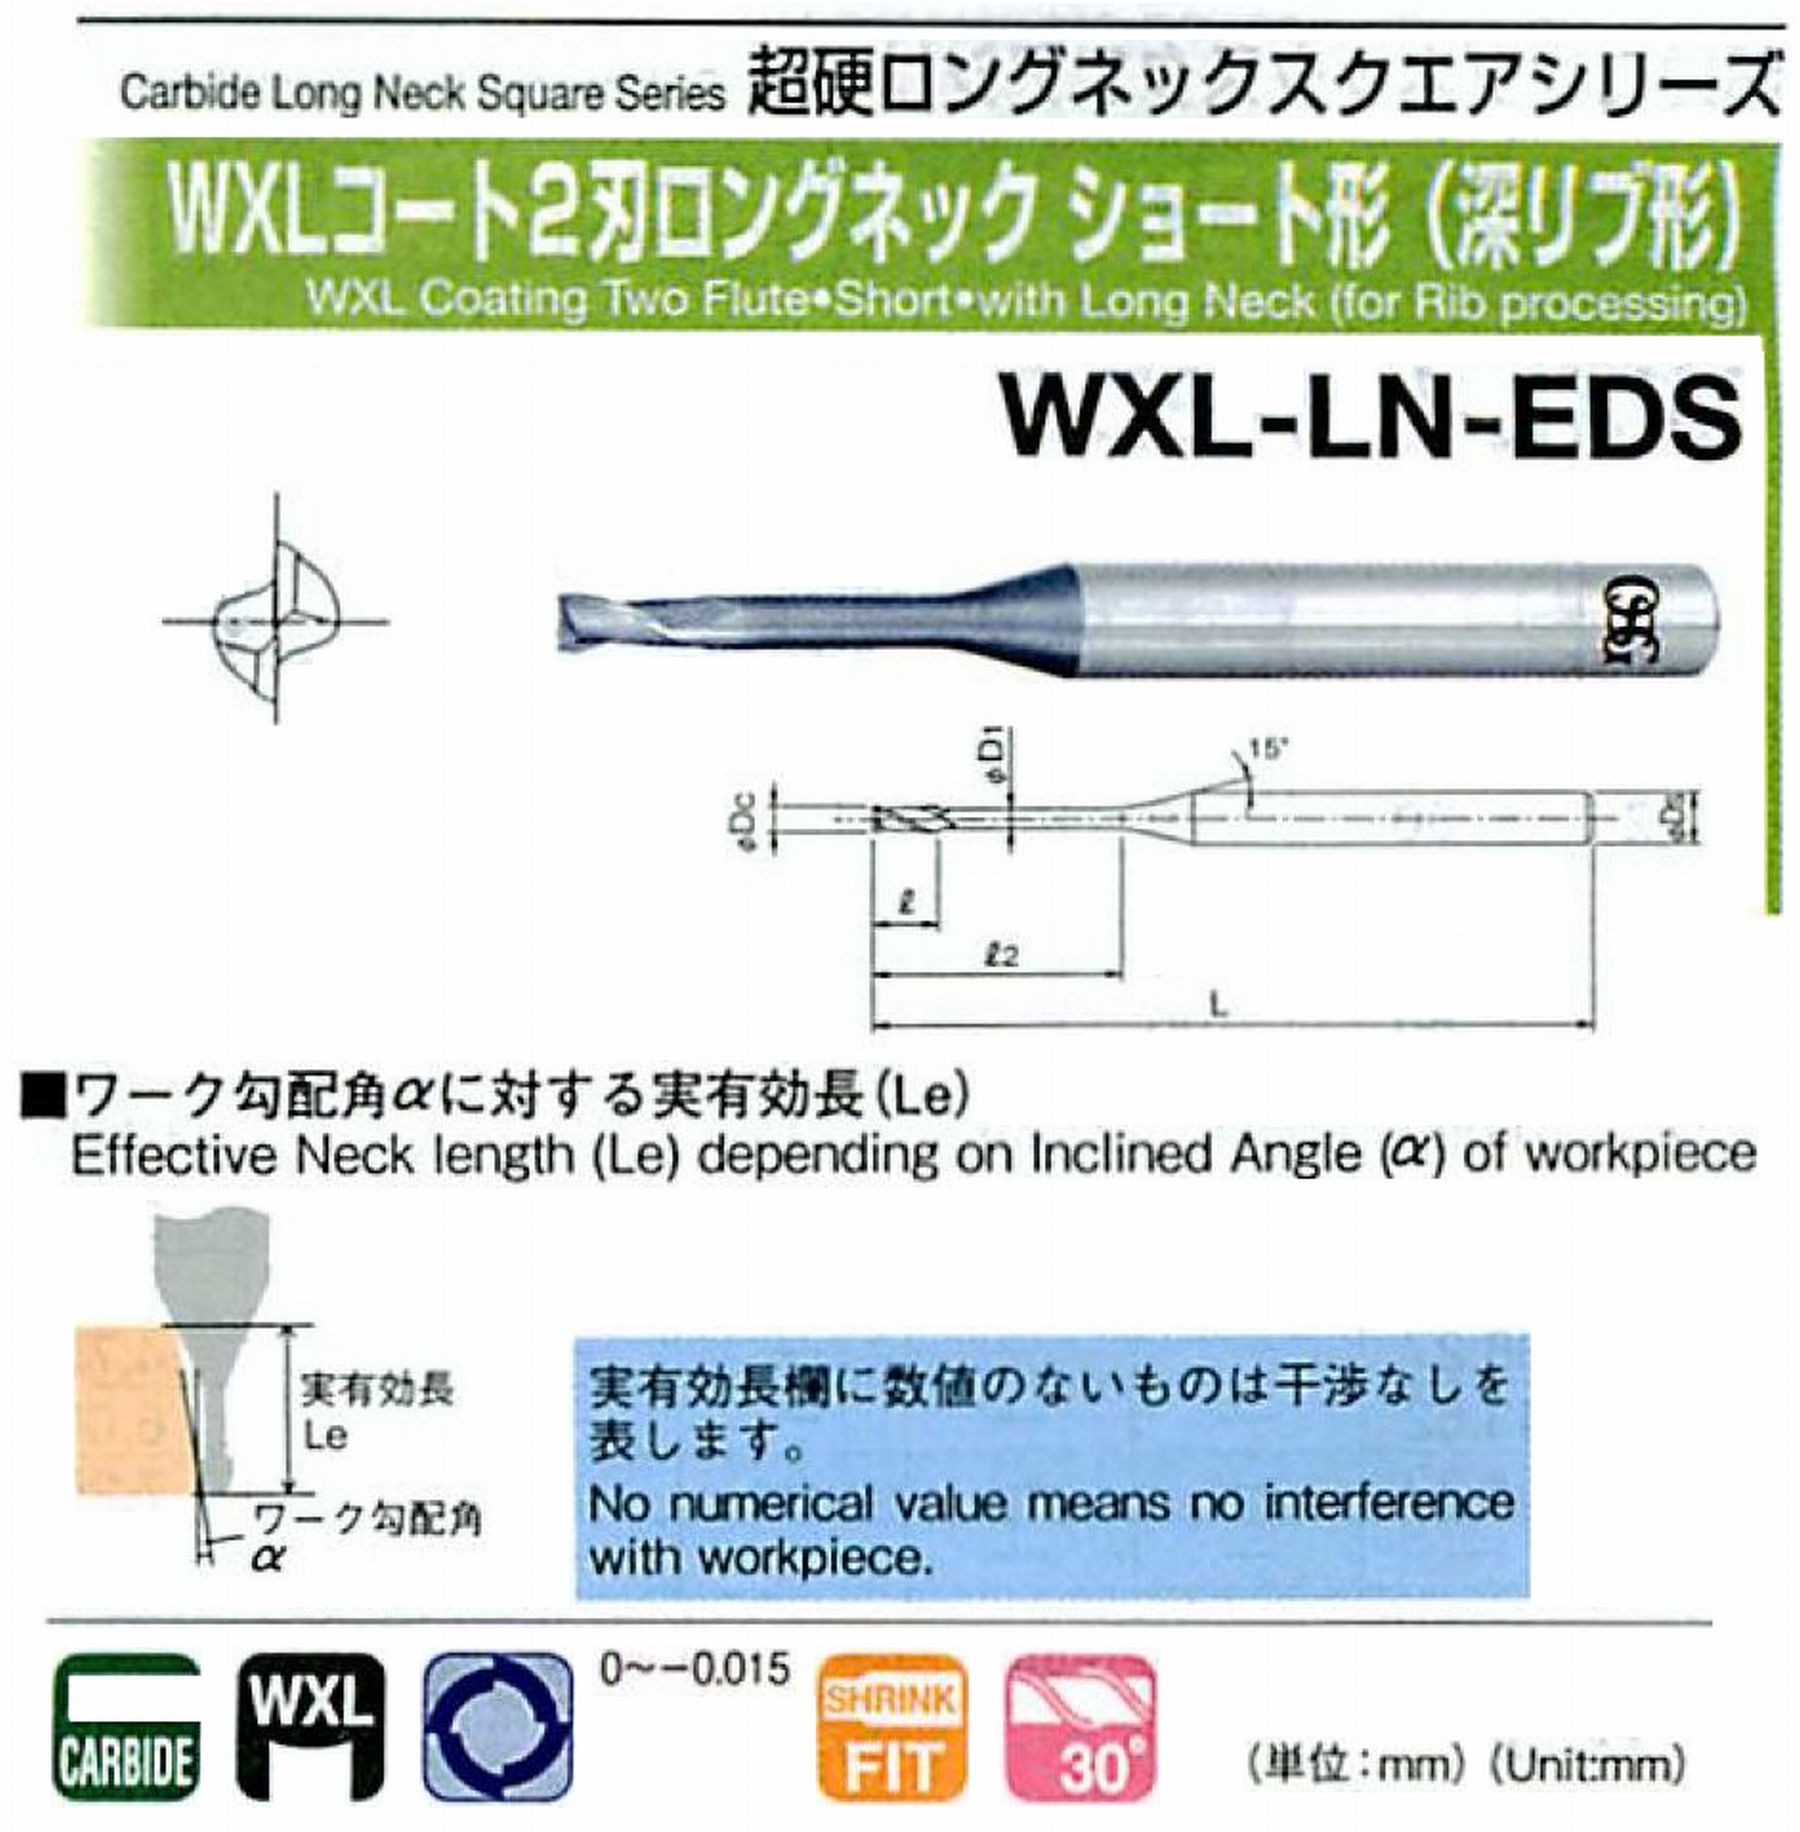 オーエスジー/OSG WXLコート2刃 ロングネックショート形(深リブ形) WXL-LN-EDS 外径×首下長2.5×16 全長55 刃長3.7 シャンク径4mm 首径2.4